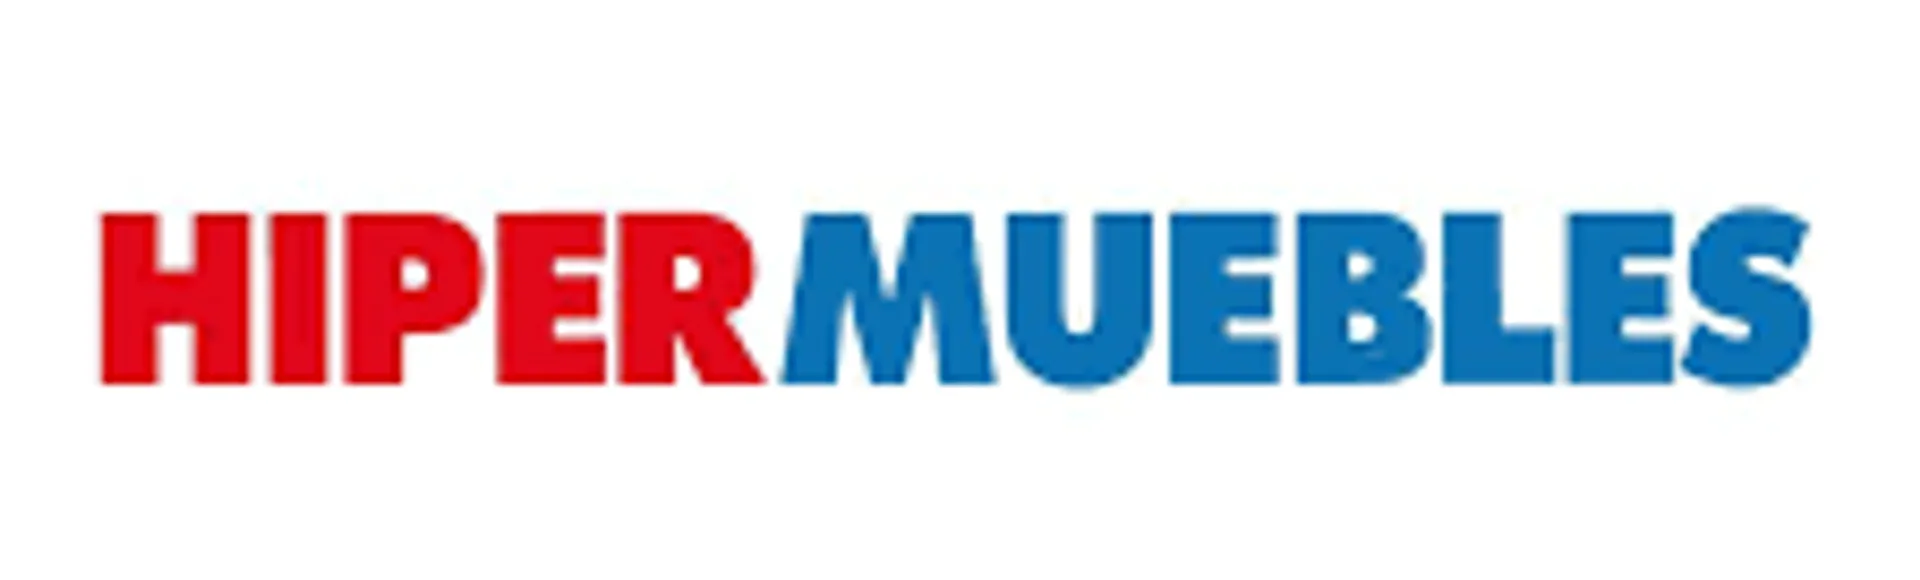 HIPER-MUEBLE logo